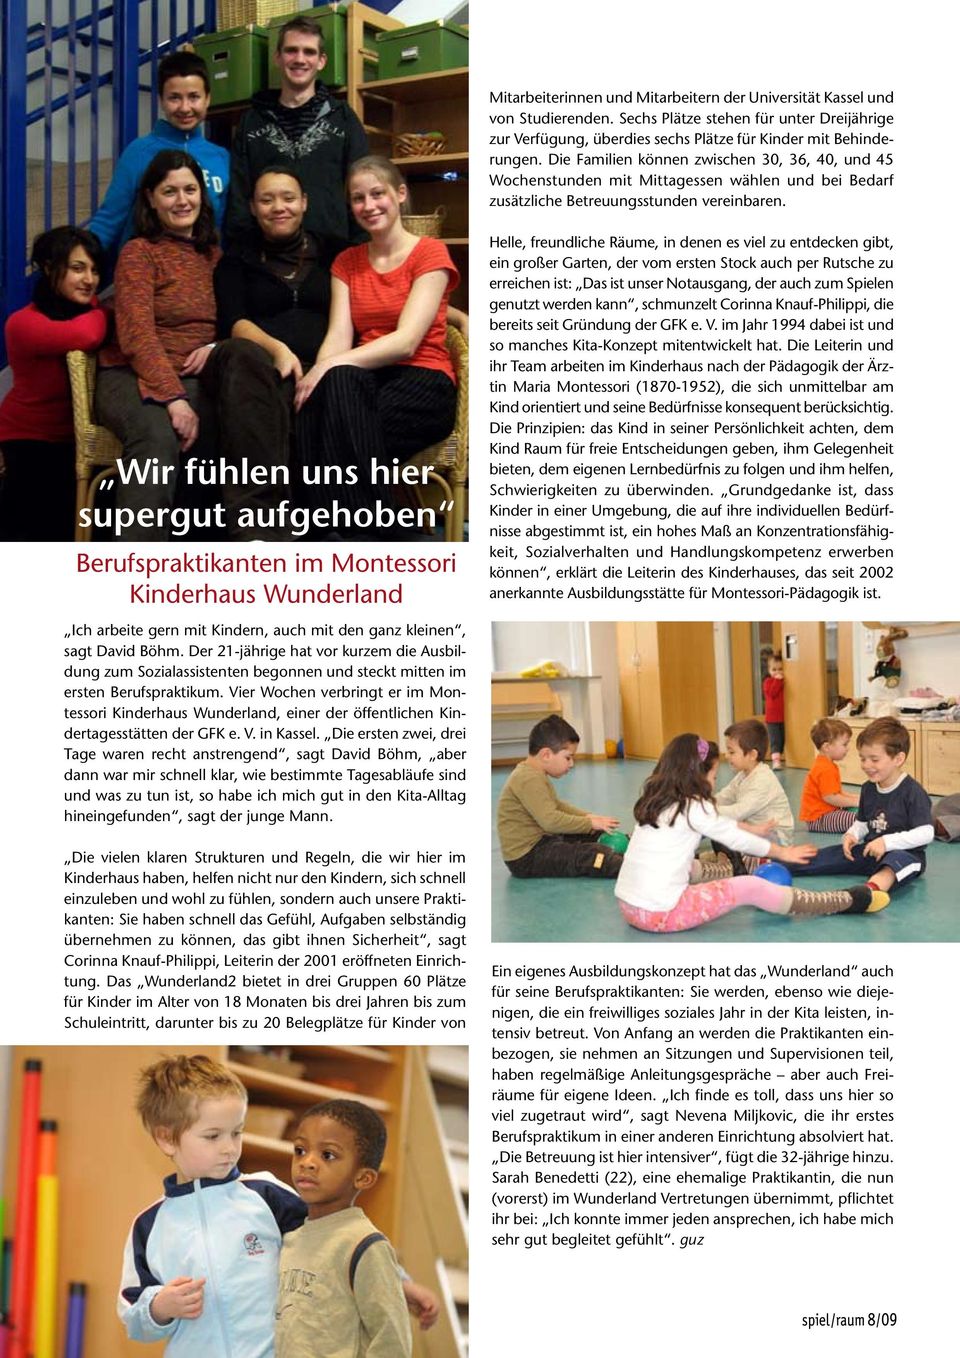 Wir fühlen uns hier supergut aufgehoben Berufspraktikanten im Montessori Kinderhaus Wunderland Ich arbeite gern mit Kindern, auch mit den ganz kleinen, sagt David Böhm.